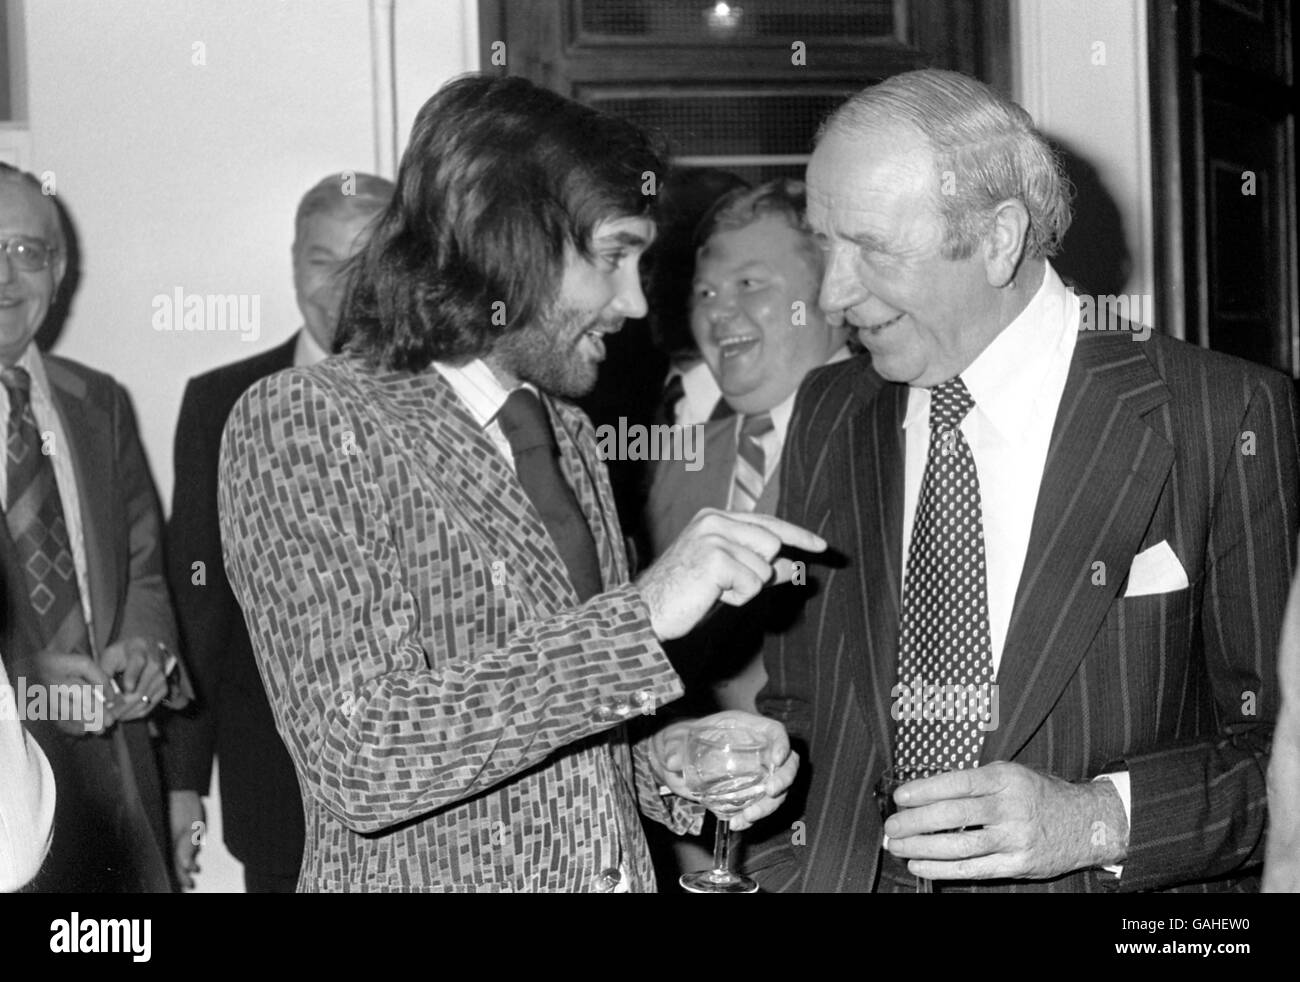 George Best de Fulham (l) discute avec son mentor, Sir Matt Busby (r), comme Benny Hill (c) a un rire en arrière-plan Banque D'Images